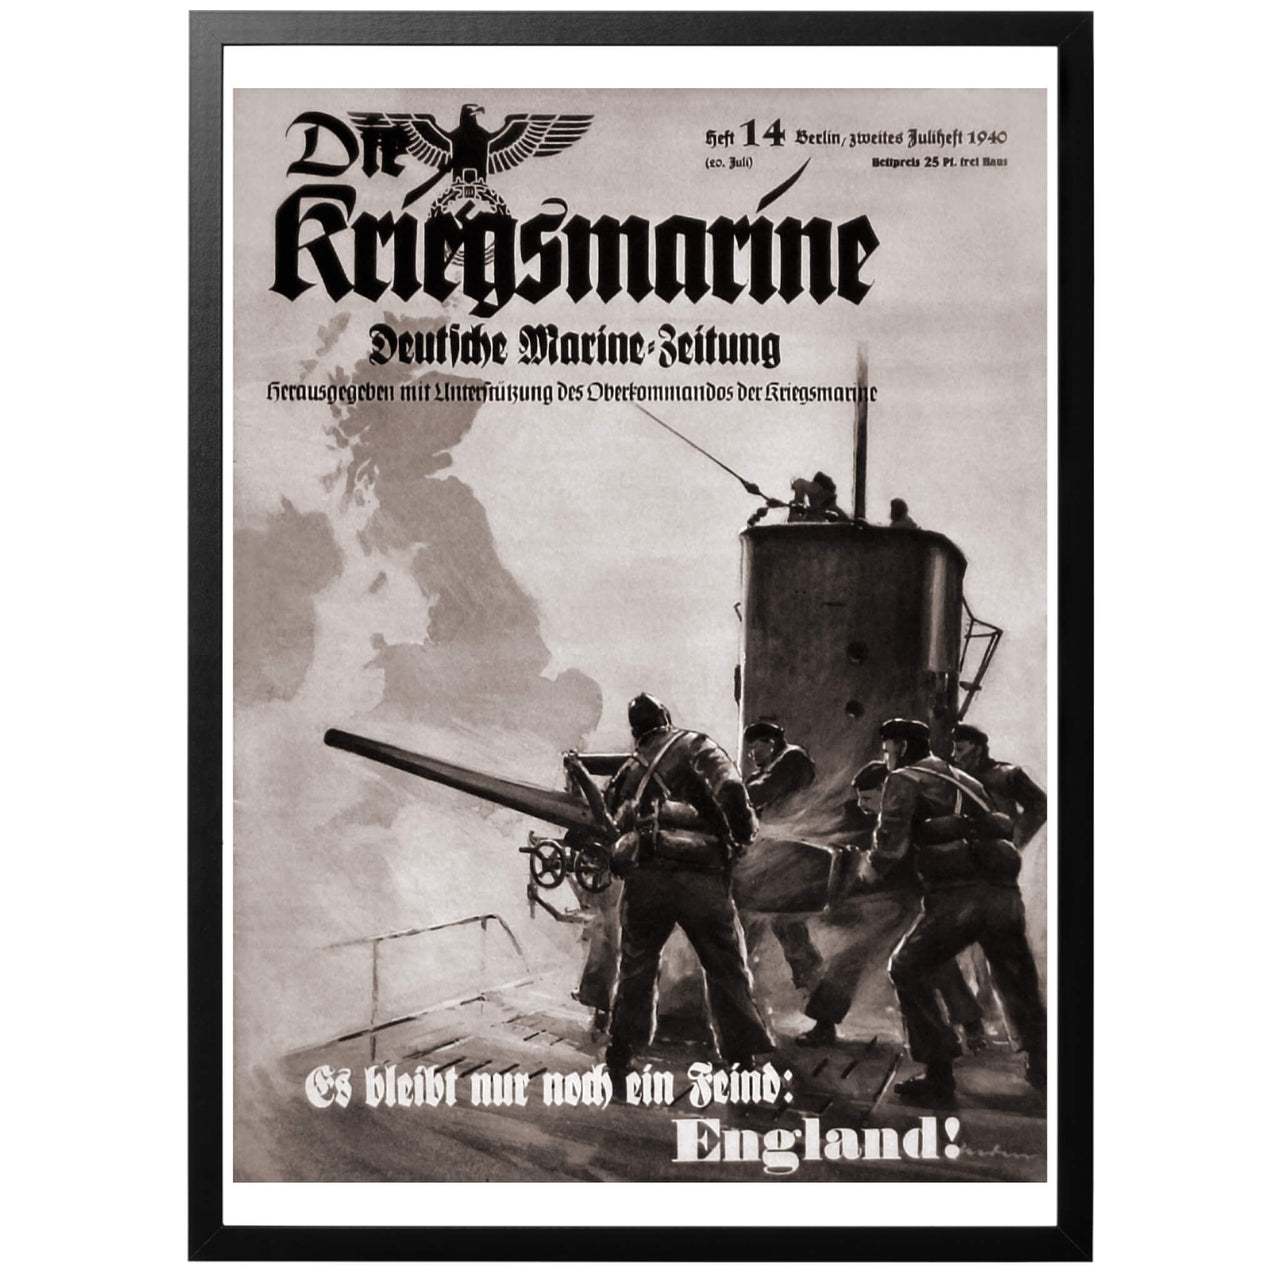 Tysk WW1 affisch från framsidan av den Tyska Kriegsmarine tidningen. Texten från affischen hävdar att nu är bara England kvar att besegra.  Tysk WWIIDie Kriegsmarine - Es bleibt nur noch ein Feind: England! - "Kriegsmarine - nu är det bara en sak som återstår: England! Tysk WWII affisch från framsidan av den Tyska Kriegsmarine tidningen. 